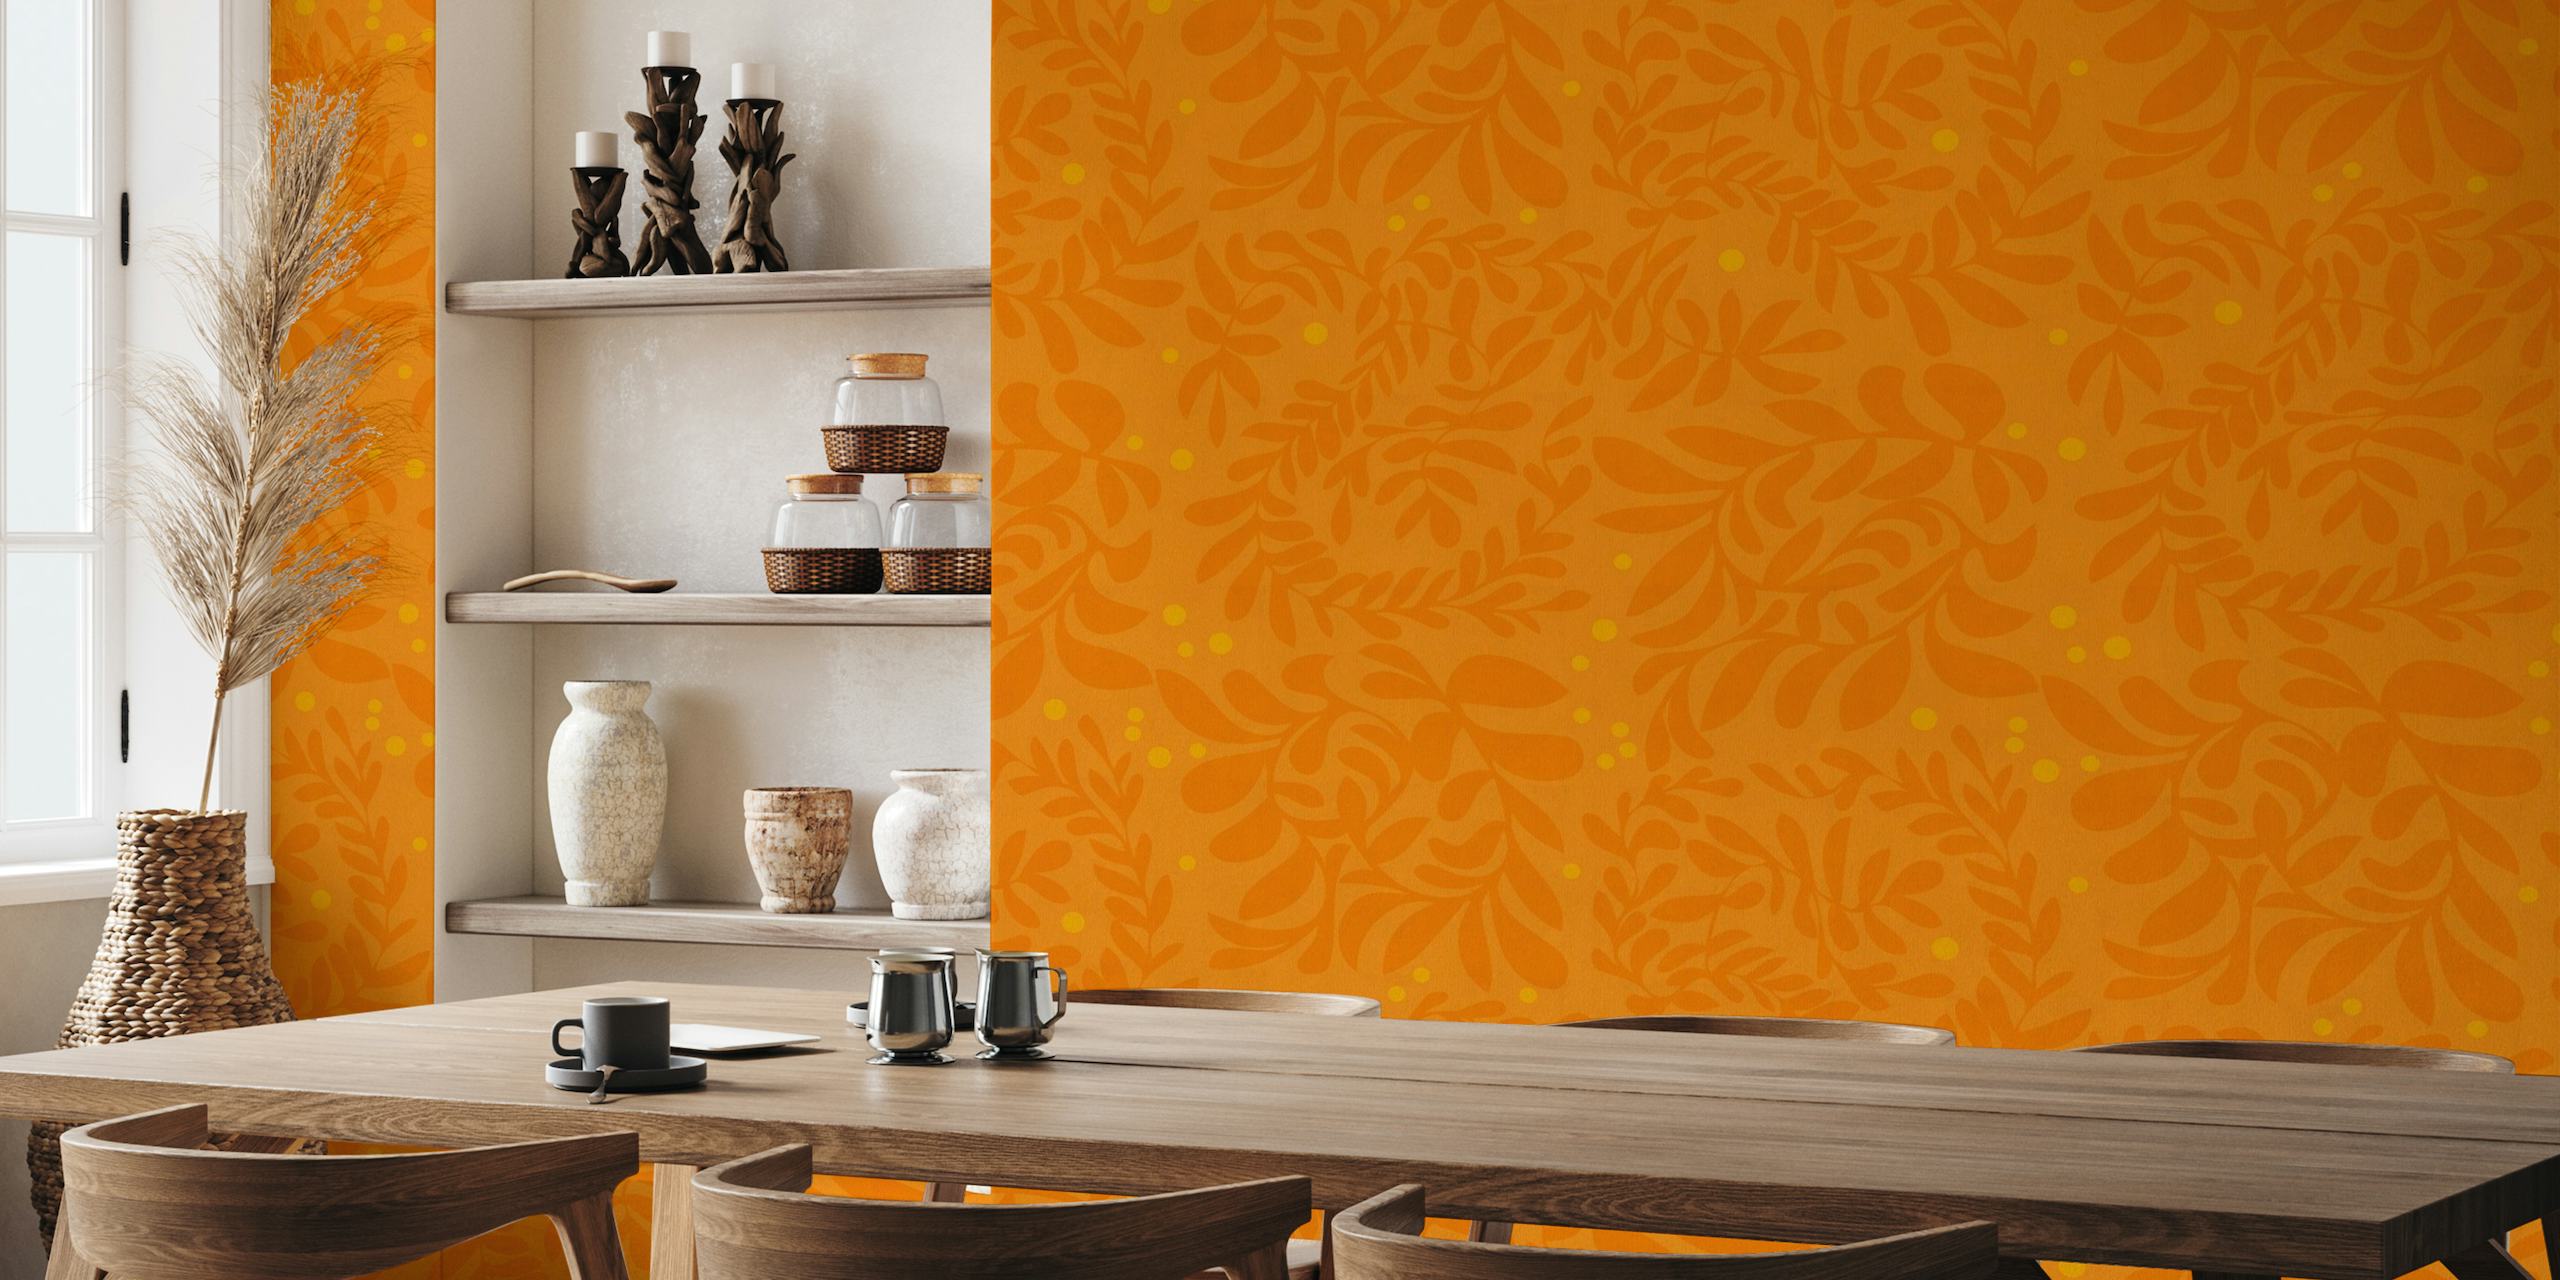 Zidna slika inspirirana jeseni s uzorkom lišća na narančastoj pozadini.